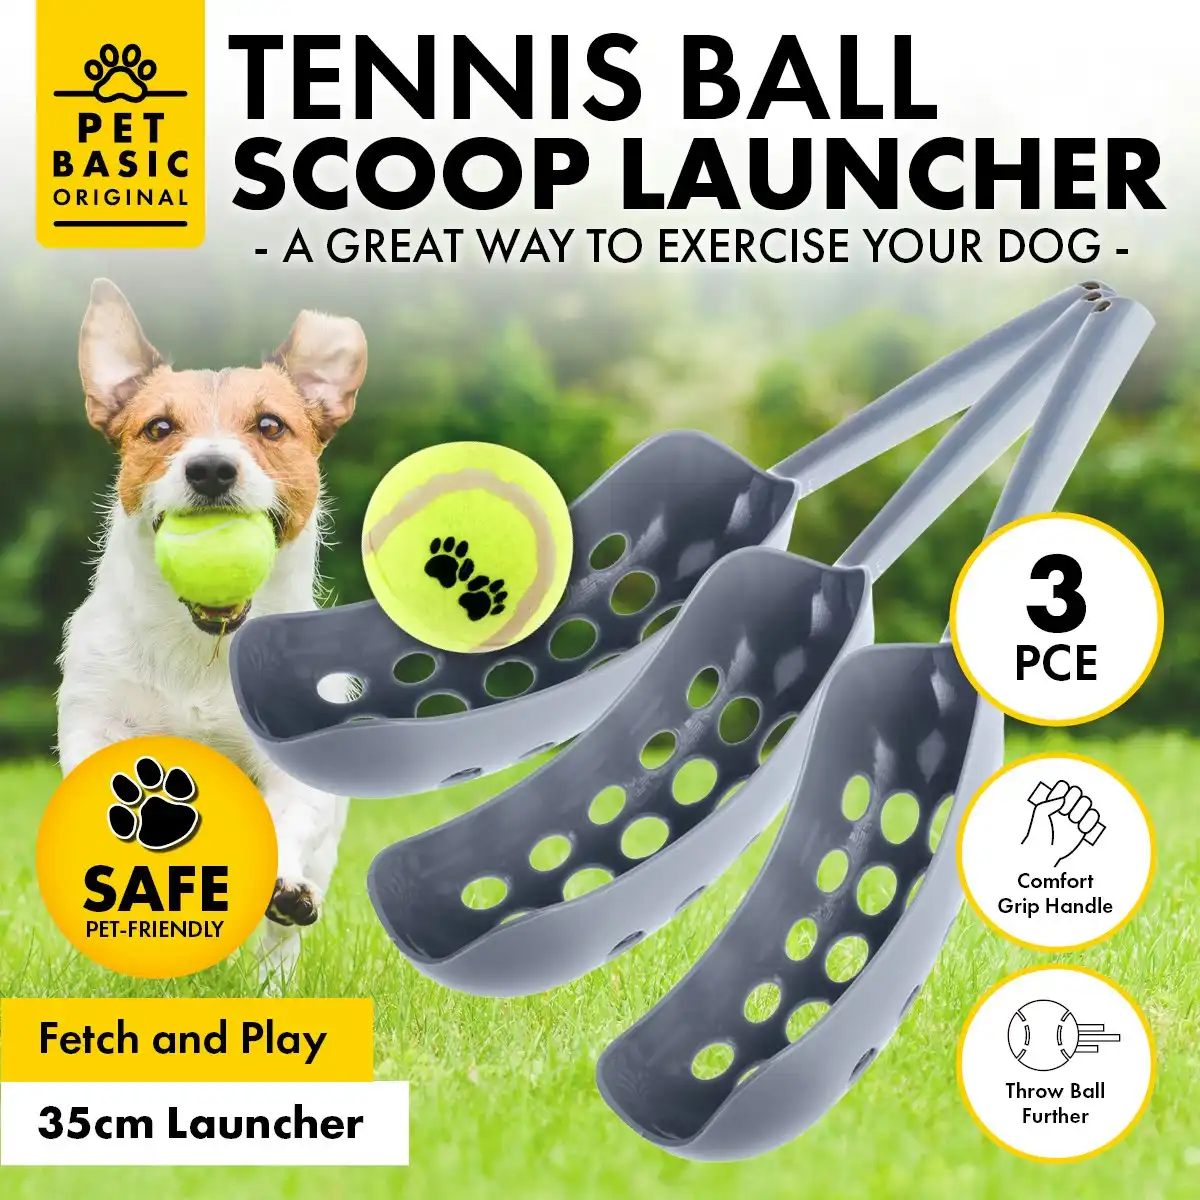 Pet Basic 3PK Dog Tennis Ball Scoop Launcher Fun Play Fetch Lightweight 35cm